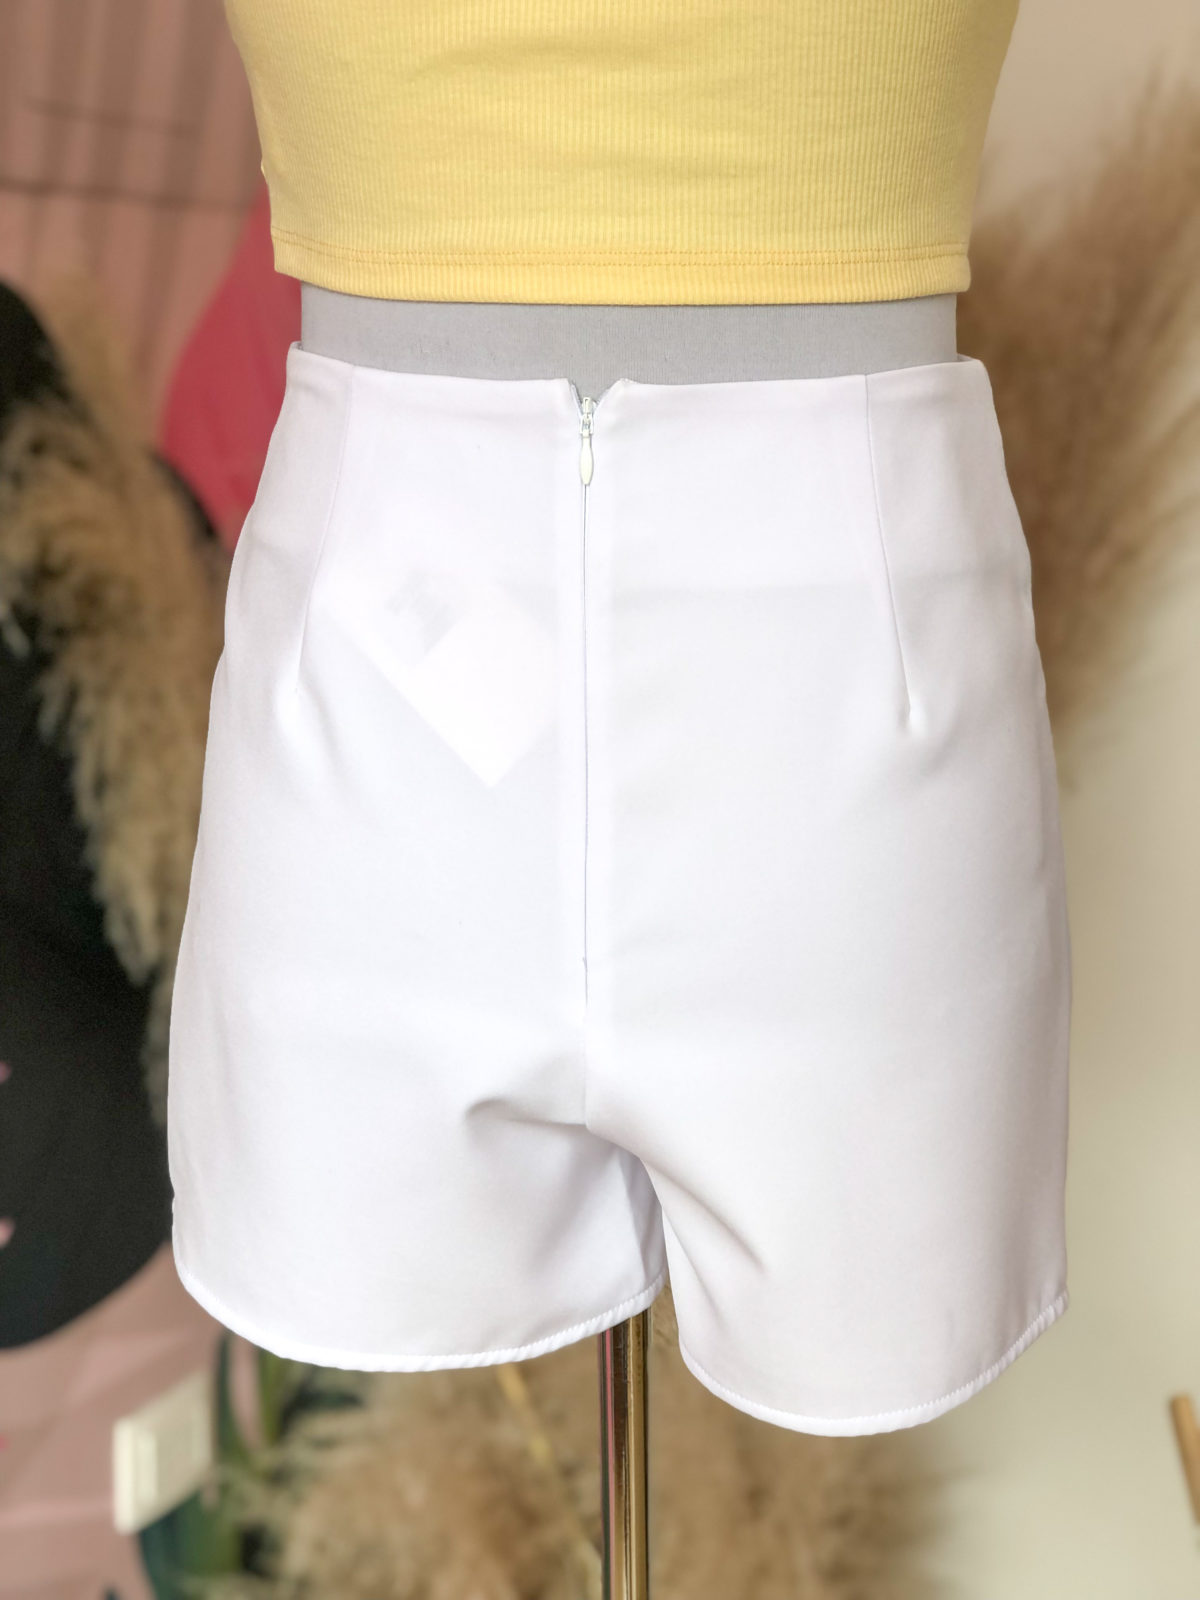 skort o falda short color blanco llano - ropa gallardo - ecuador